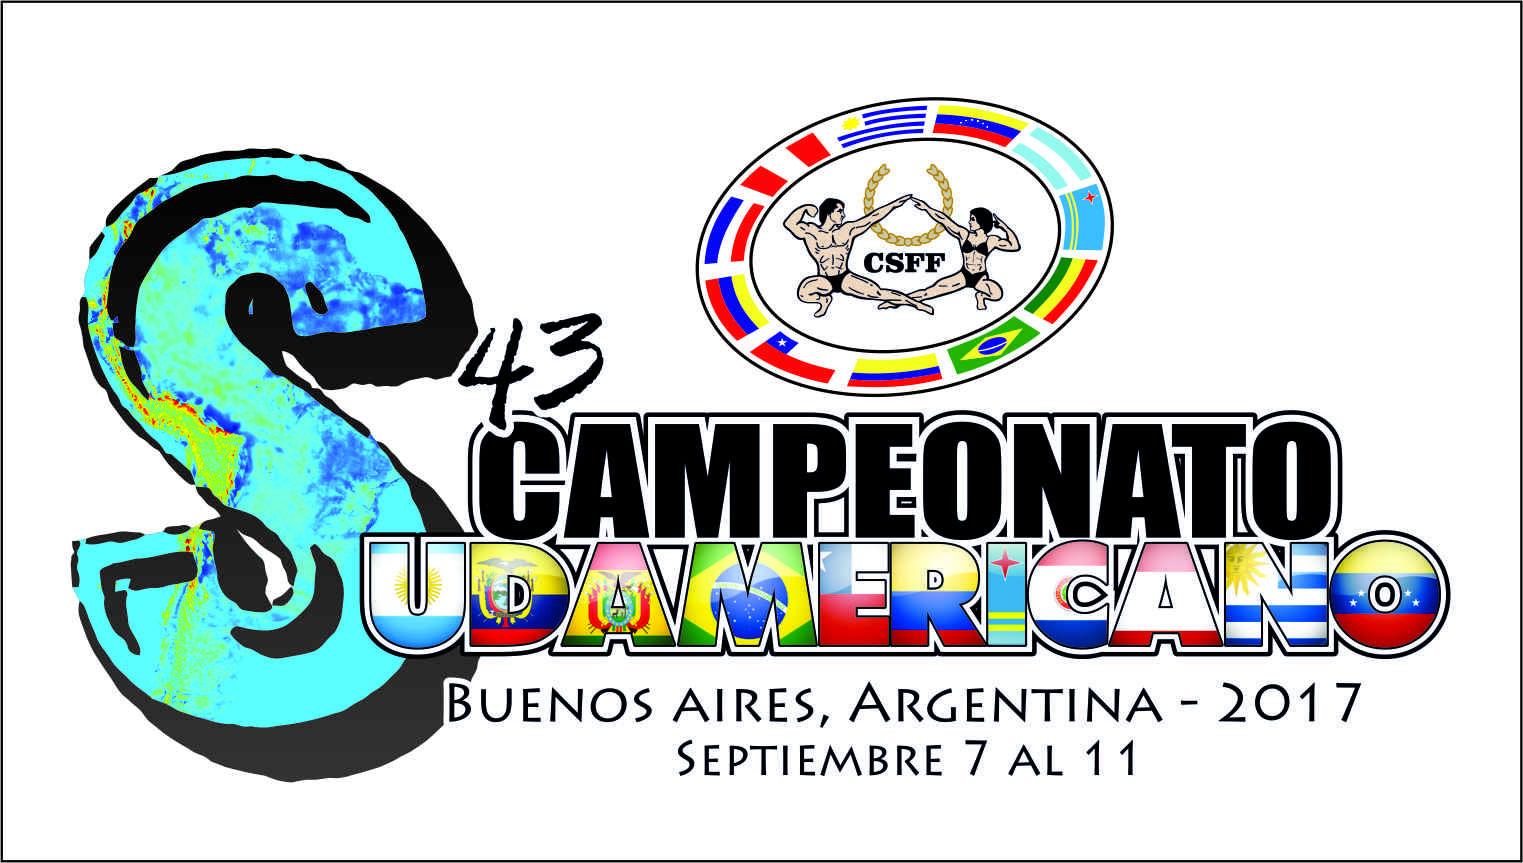 Programa tentativo de competencias Sudamericano 2017